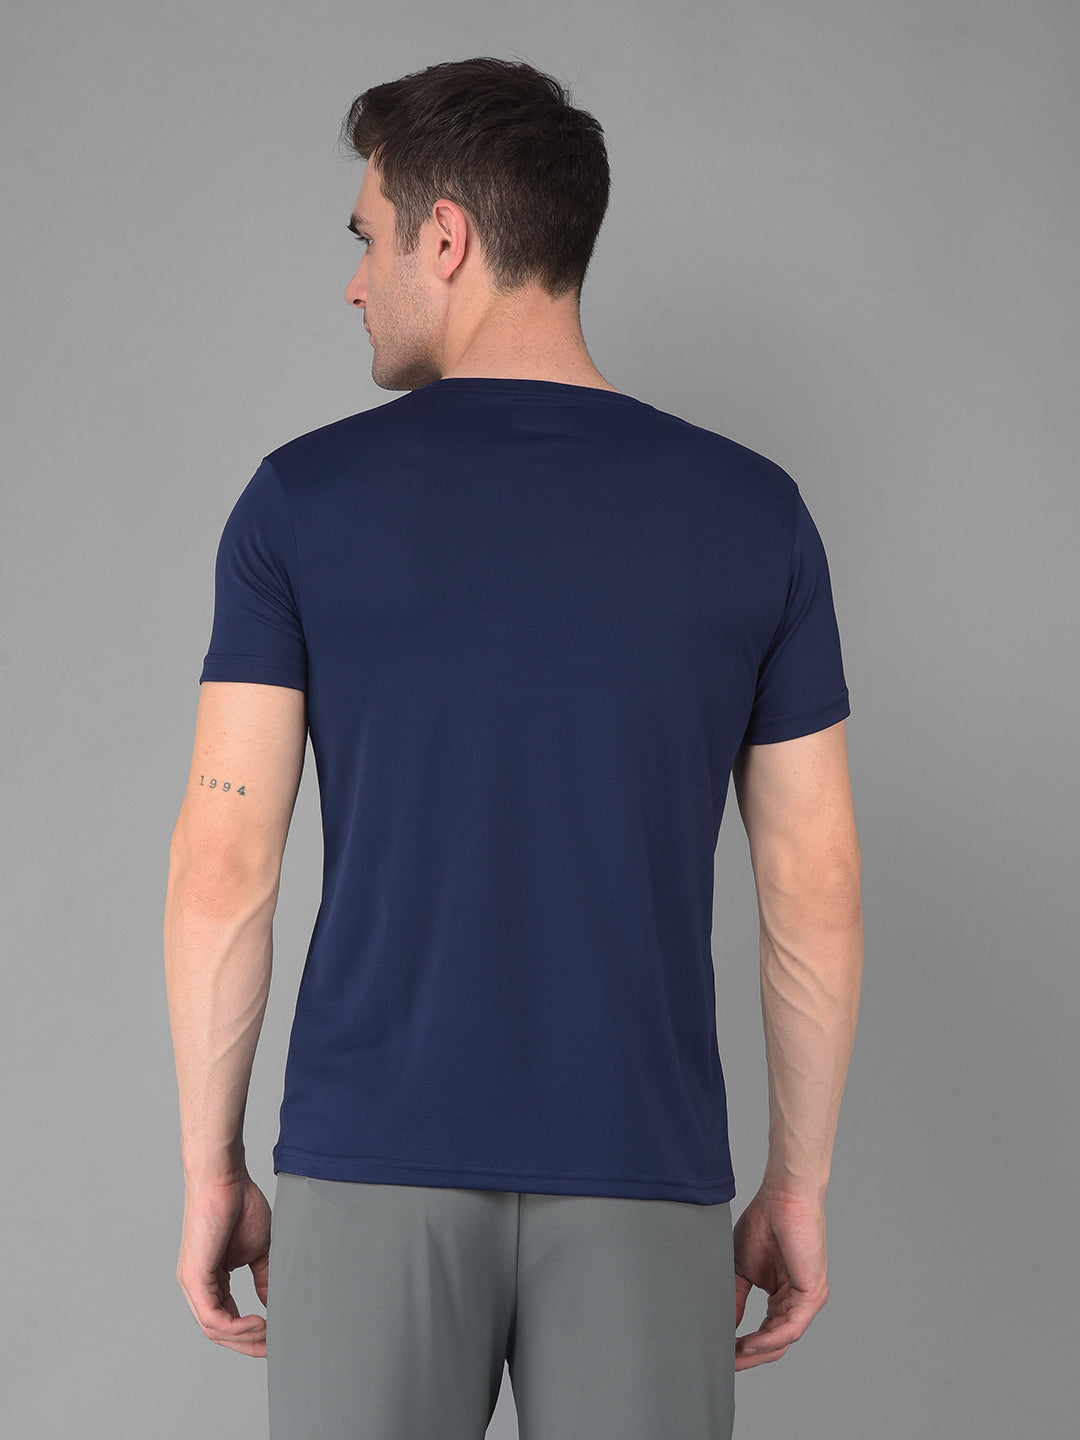 cobb solid navy blue round neck active wear t-shirt